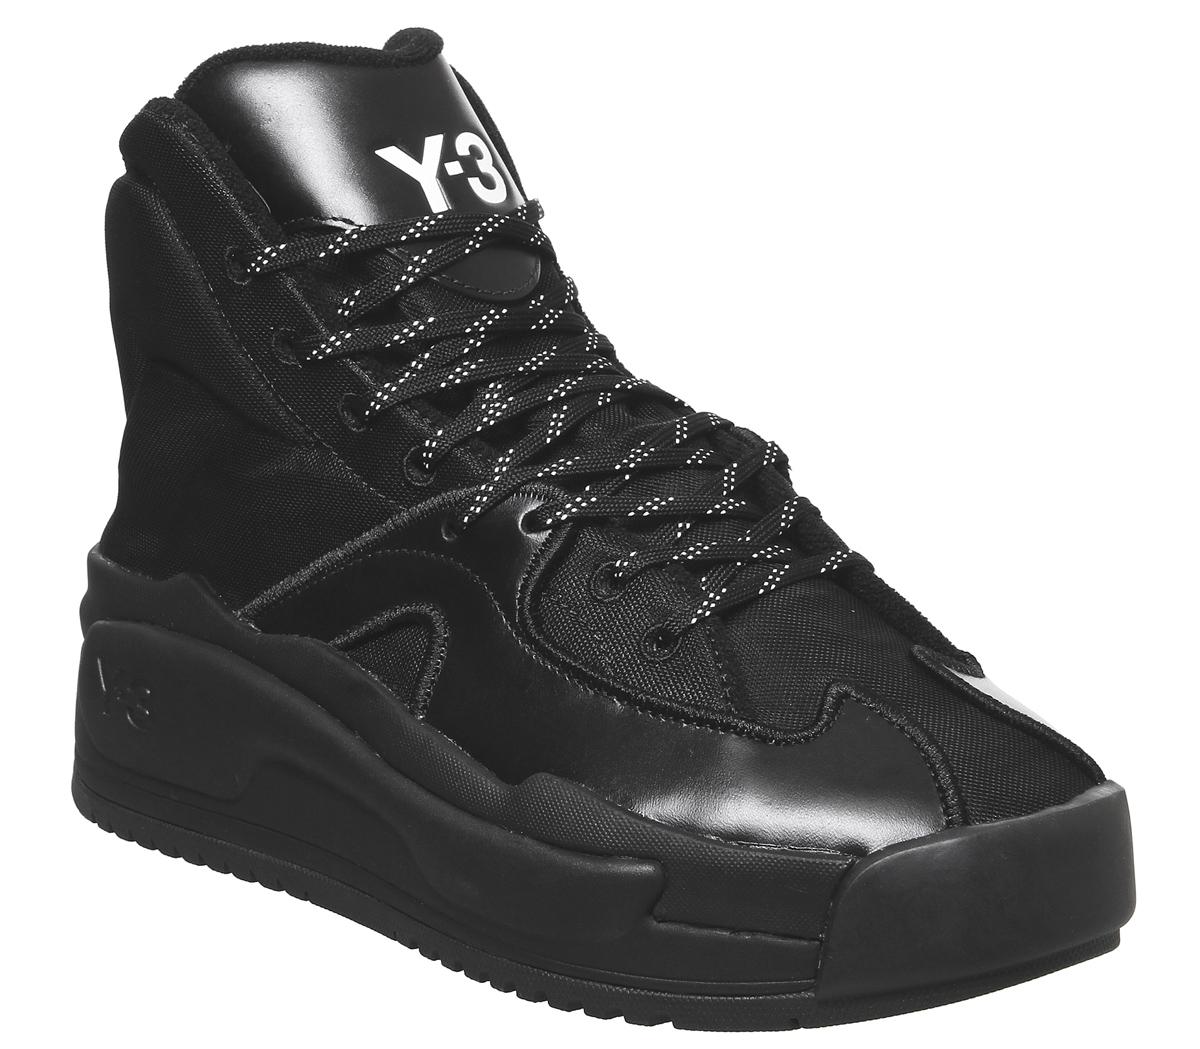 y3 hokori sneakers